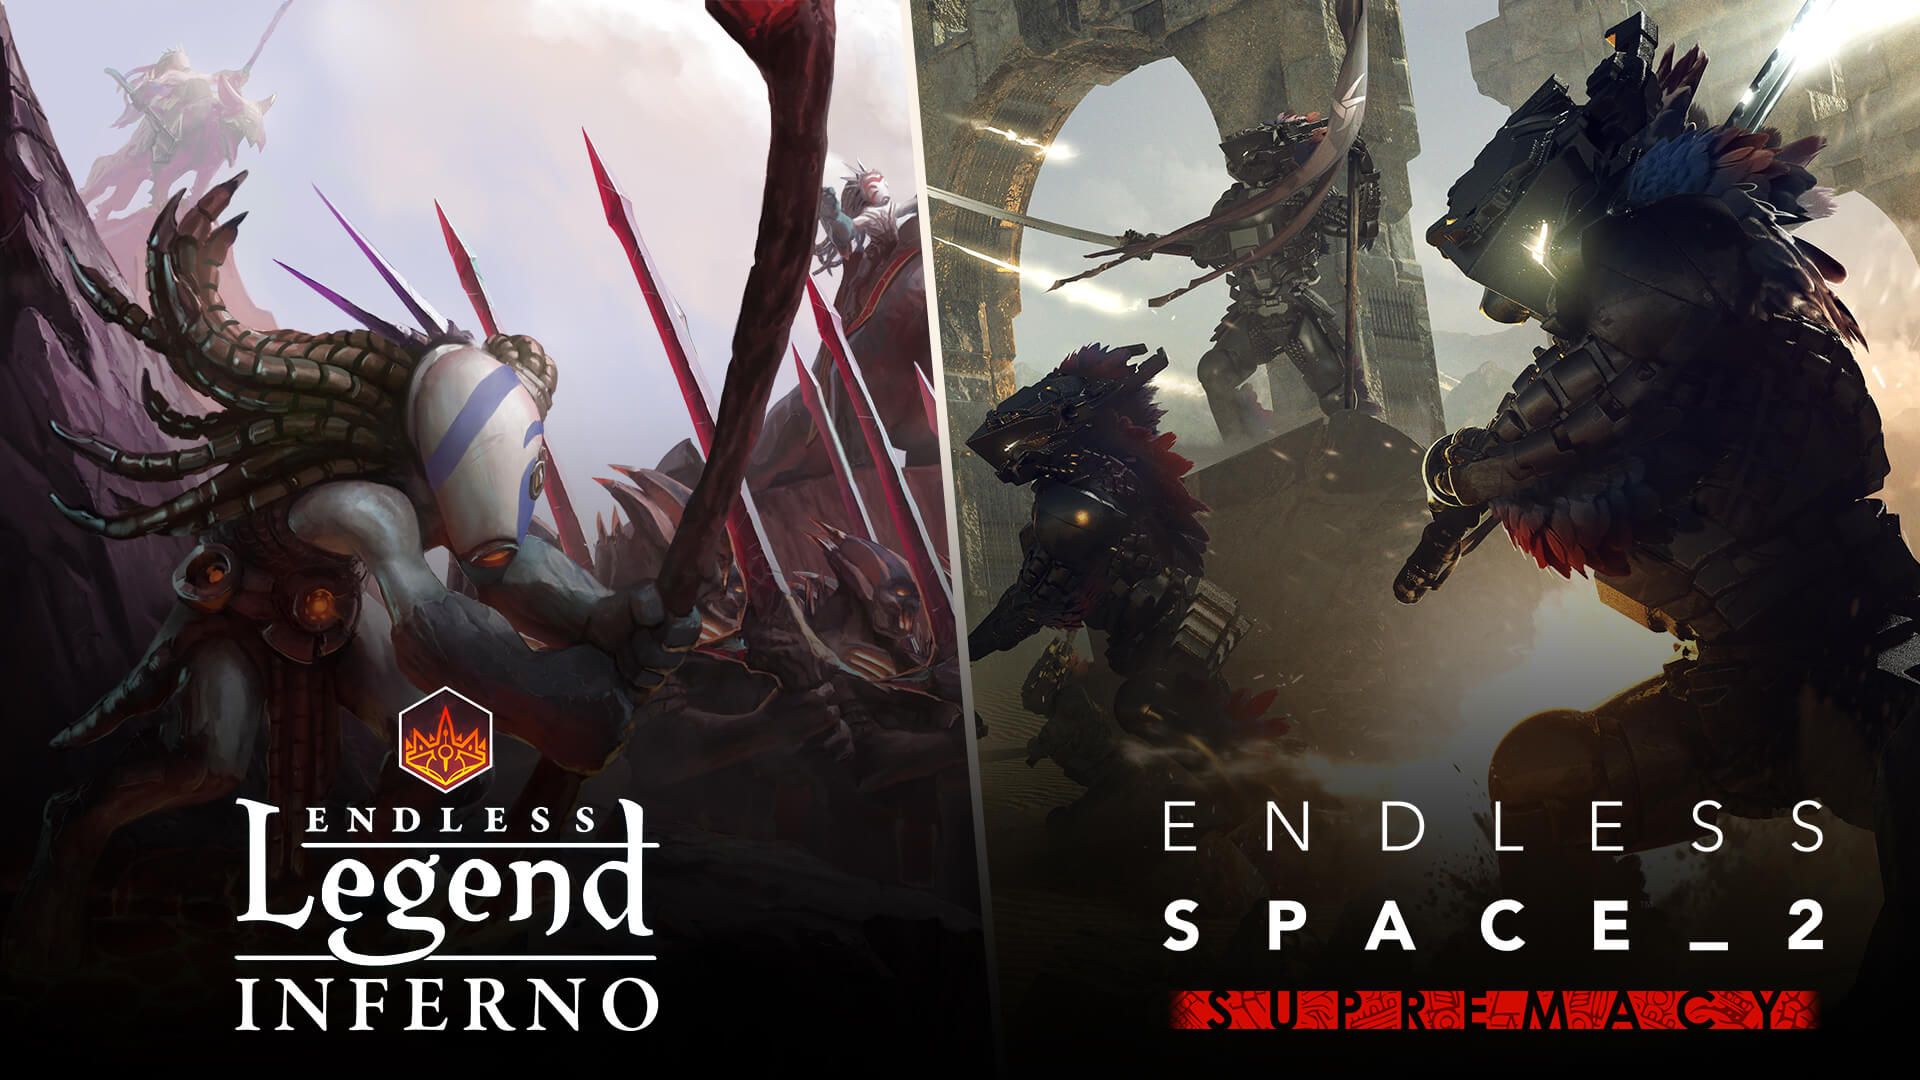 Dos de las aventuras que se pueden disfrutar de forma gratuita son Endless Legend y Dungeon of the Endles.s 